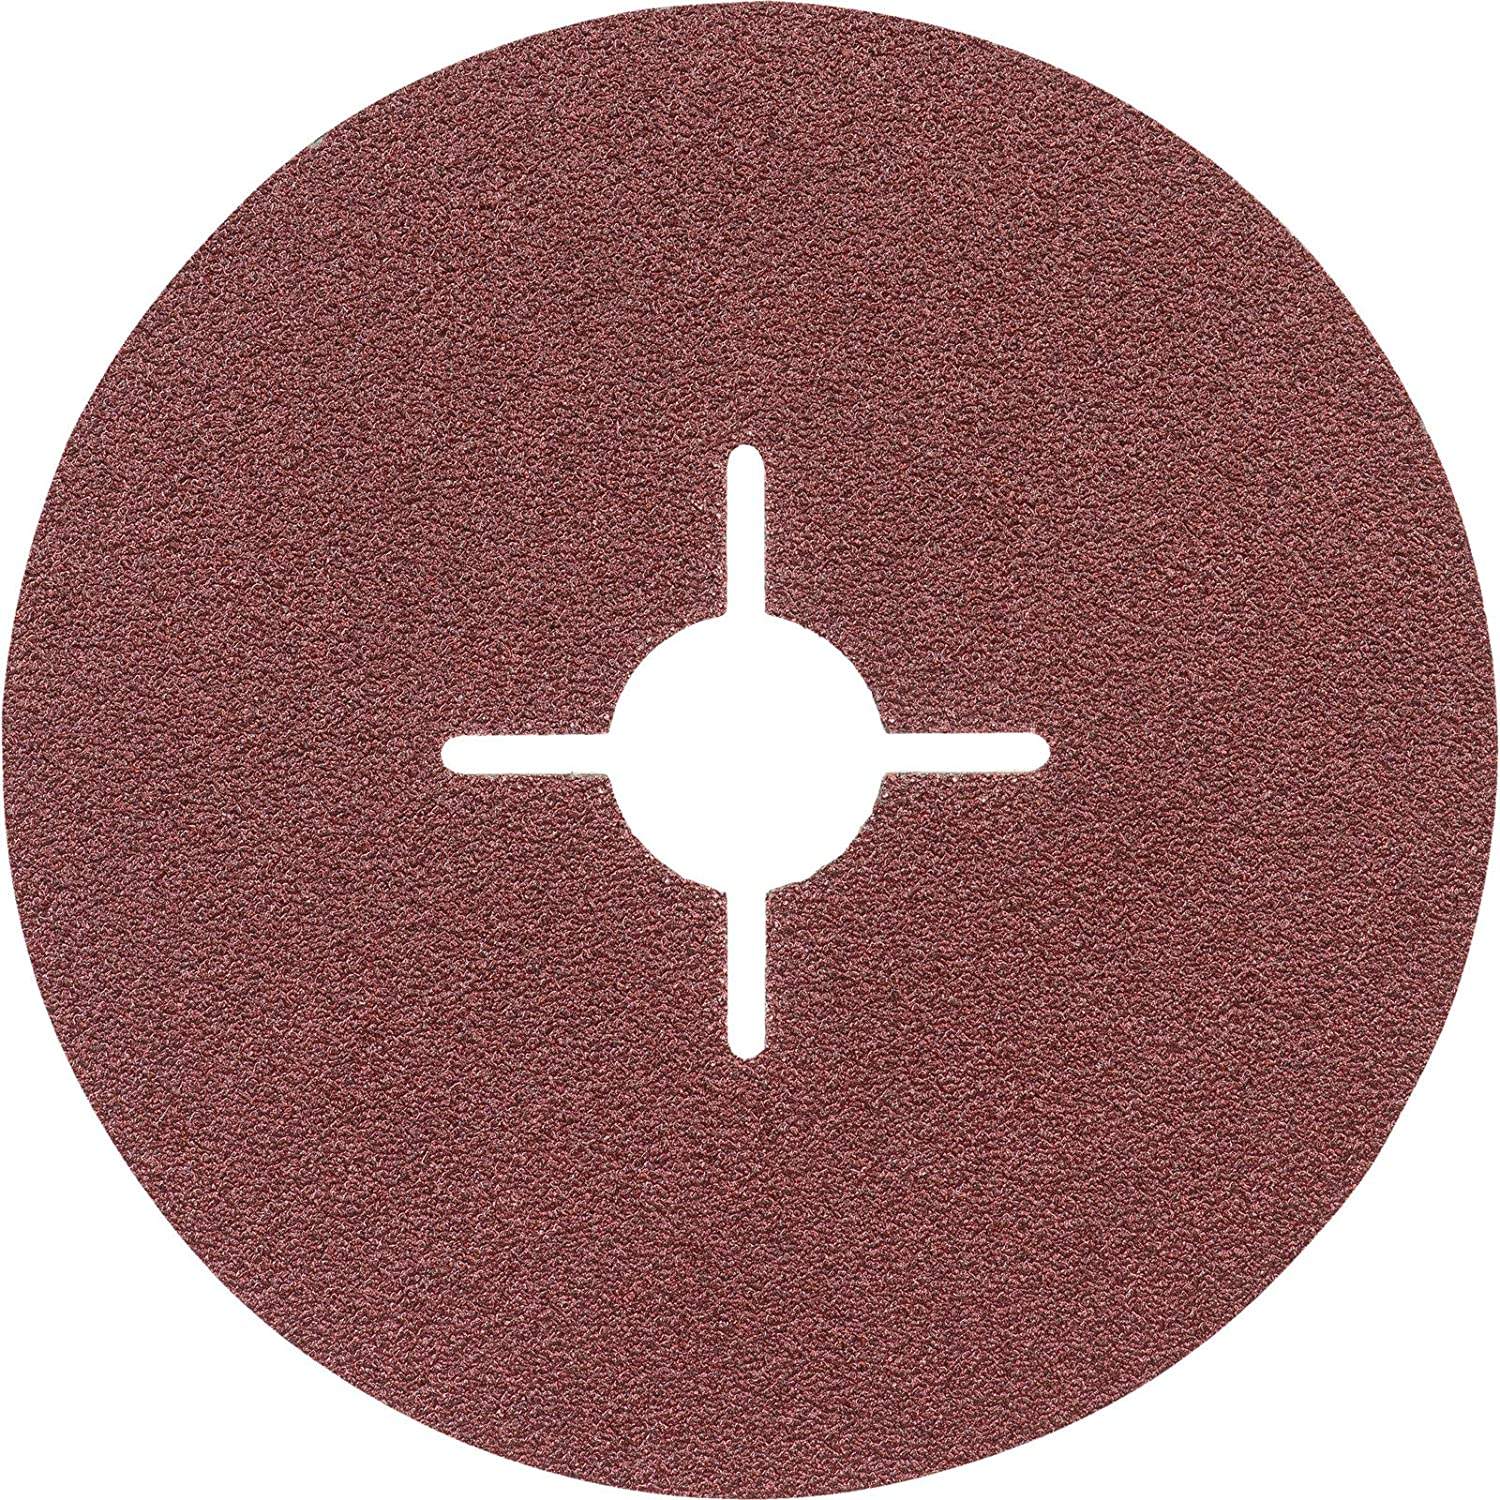 Fiber metal disc, diameter 125mm, 120 grain